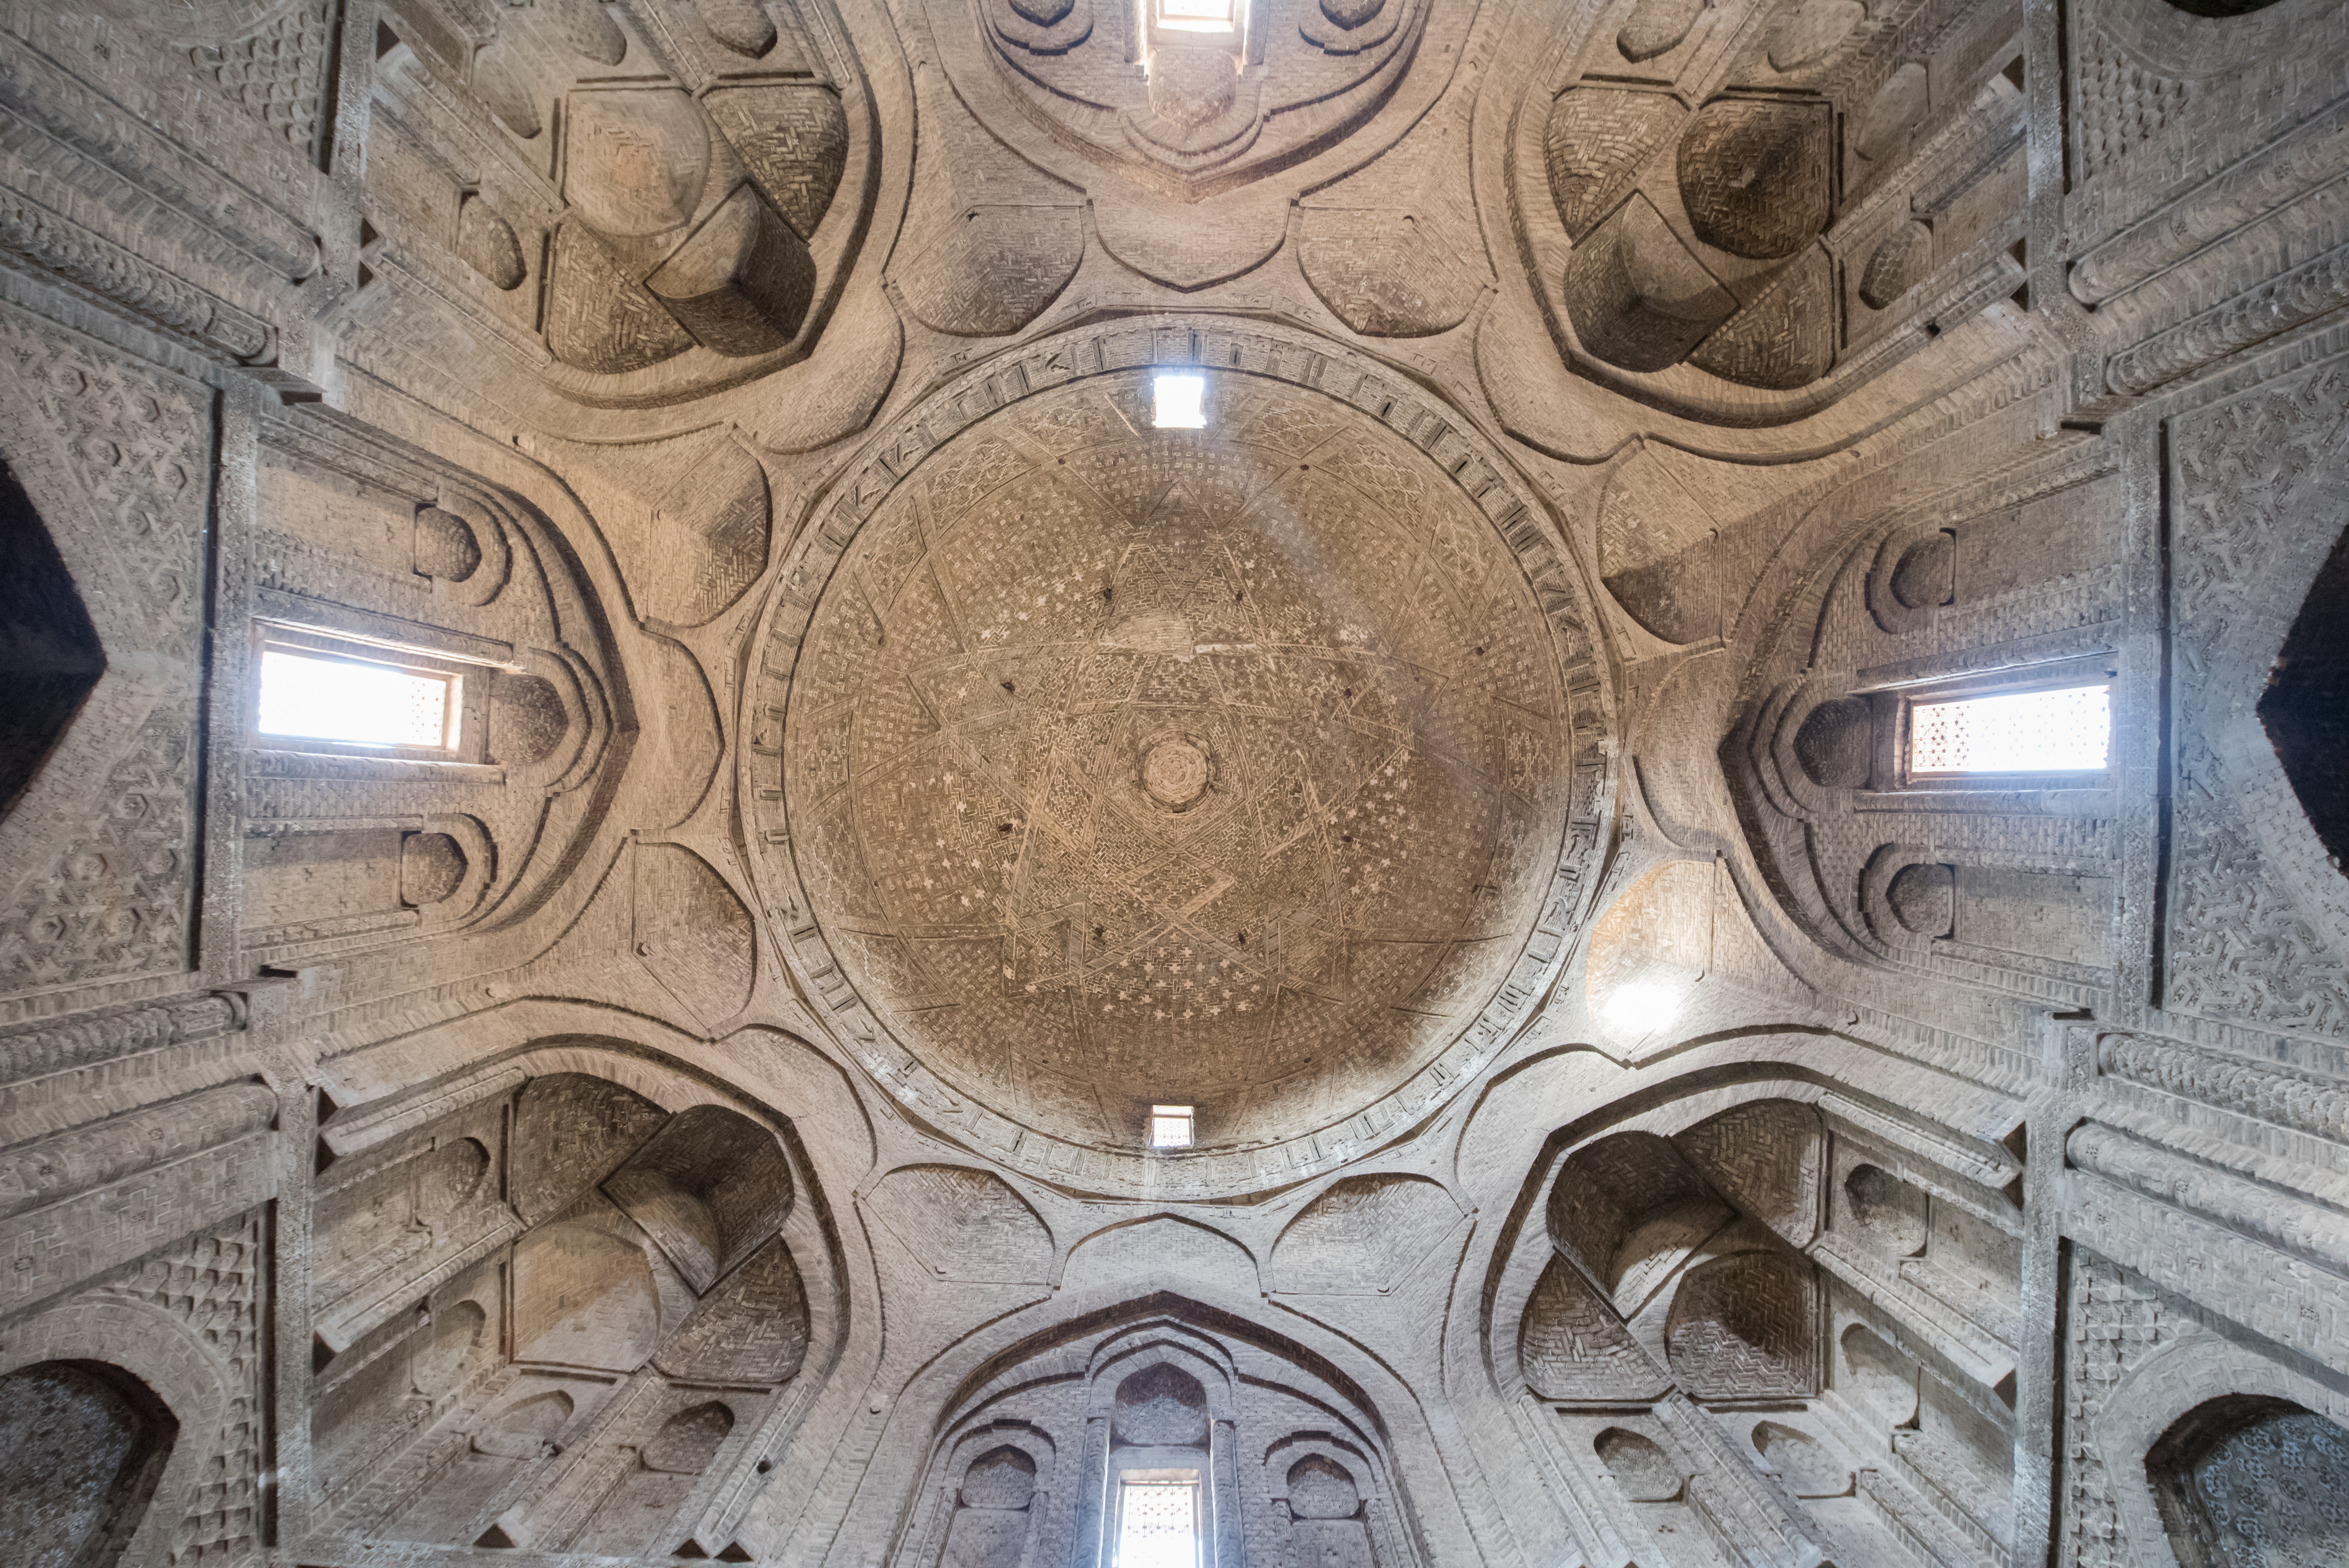 The interior architecture of Nizam al-Mulk Dome. – © imeduard / Shutterstock